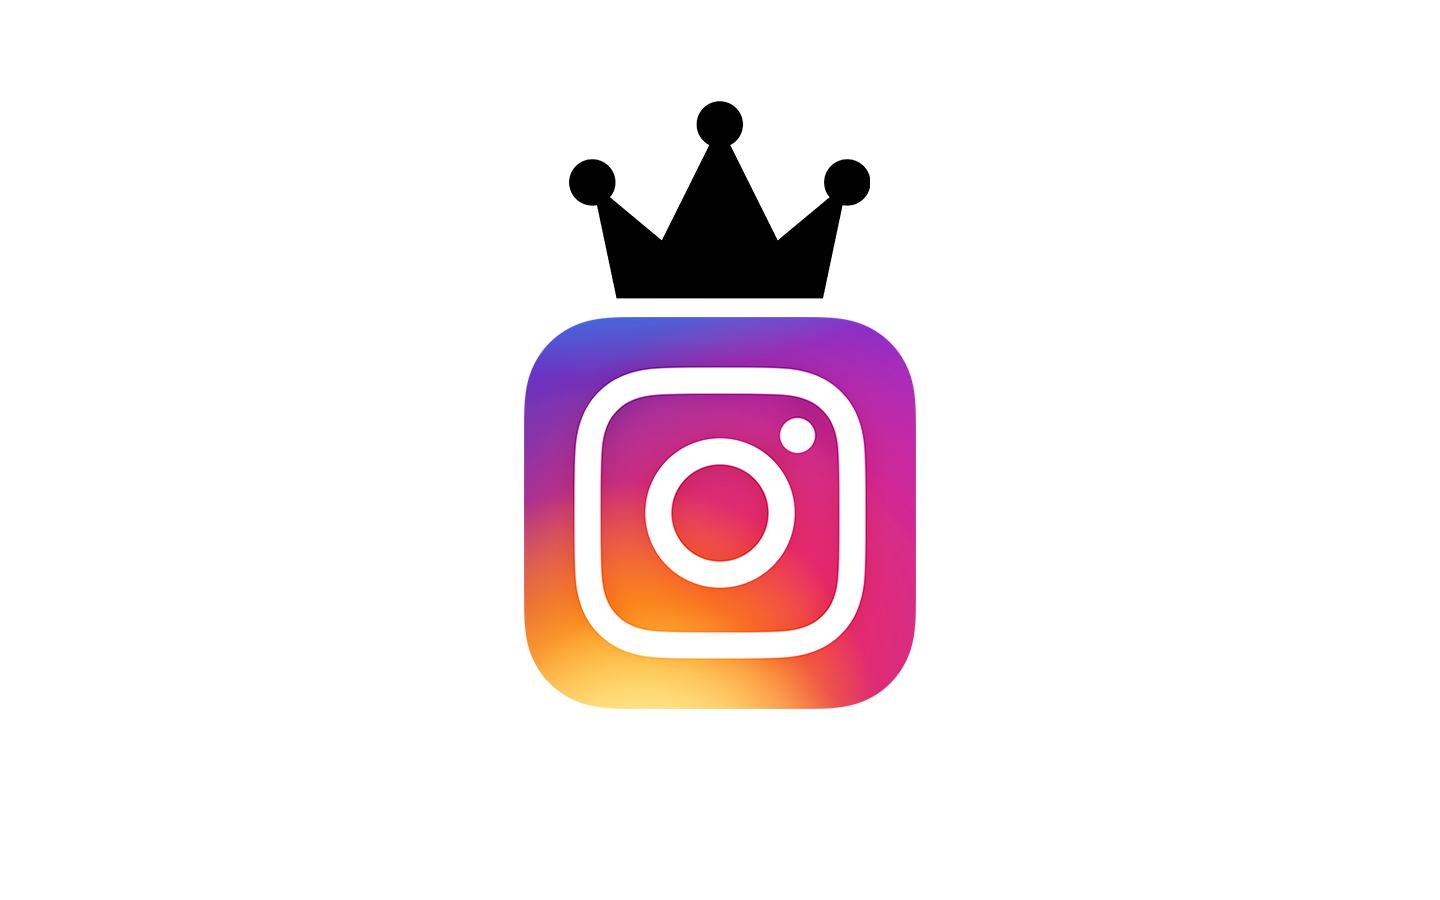 blogssocial-media-in-2018-wat-speelt-erde-aanstormende-koning-instagram-visual-8095-636686467150000000